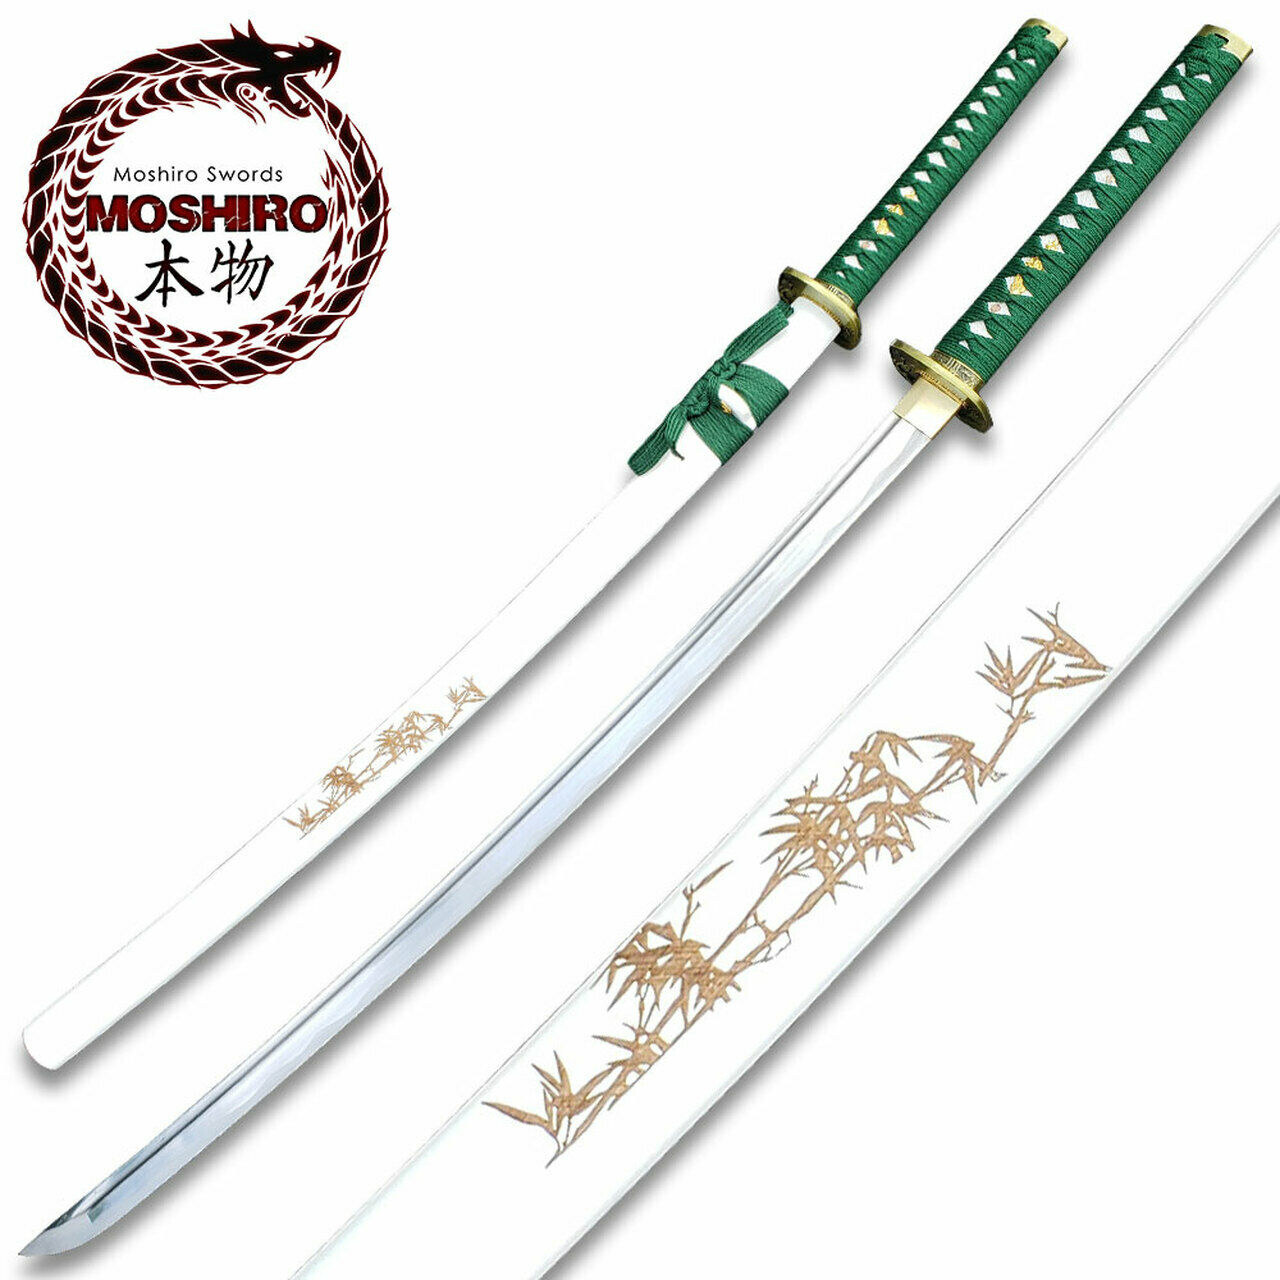 MOSHIRO Brand 1045 Steel Handmade Katana With Bamboo Engraved on White Scabbard